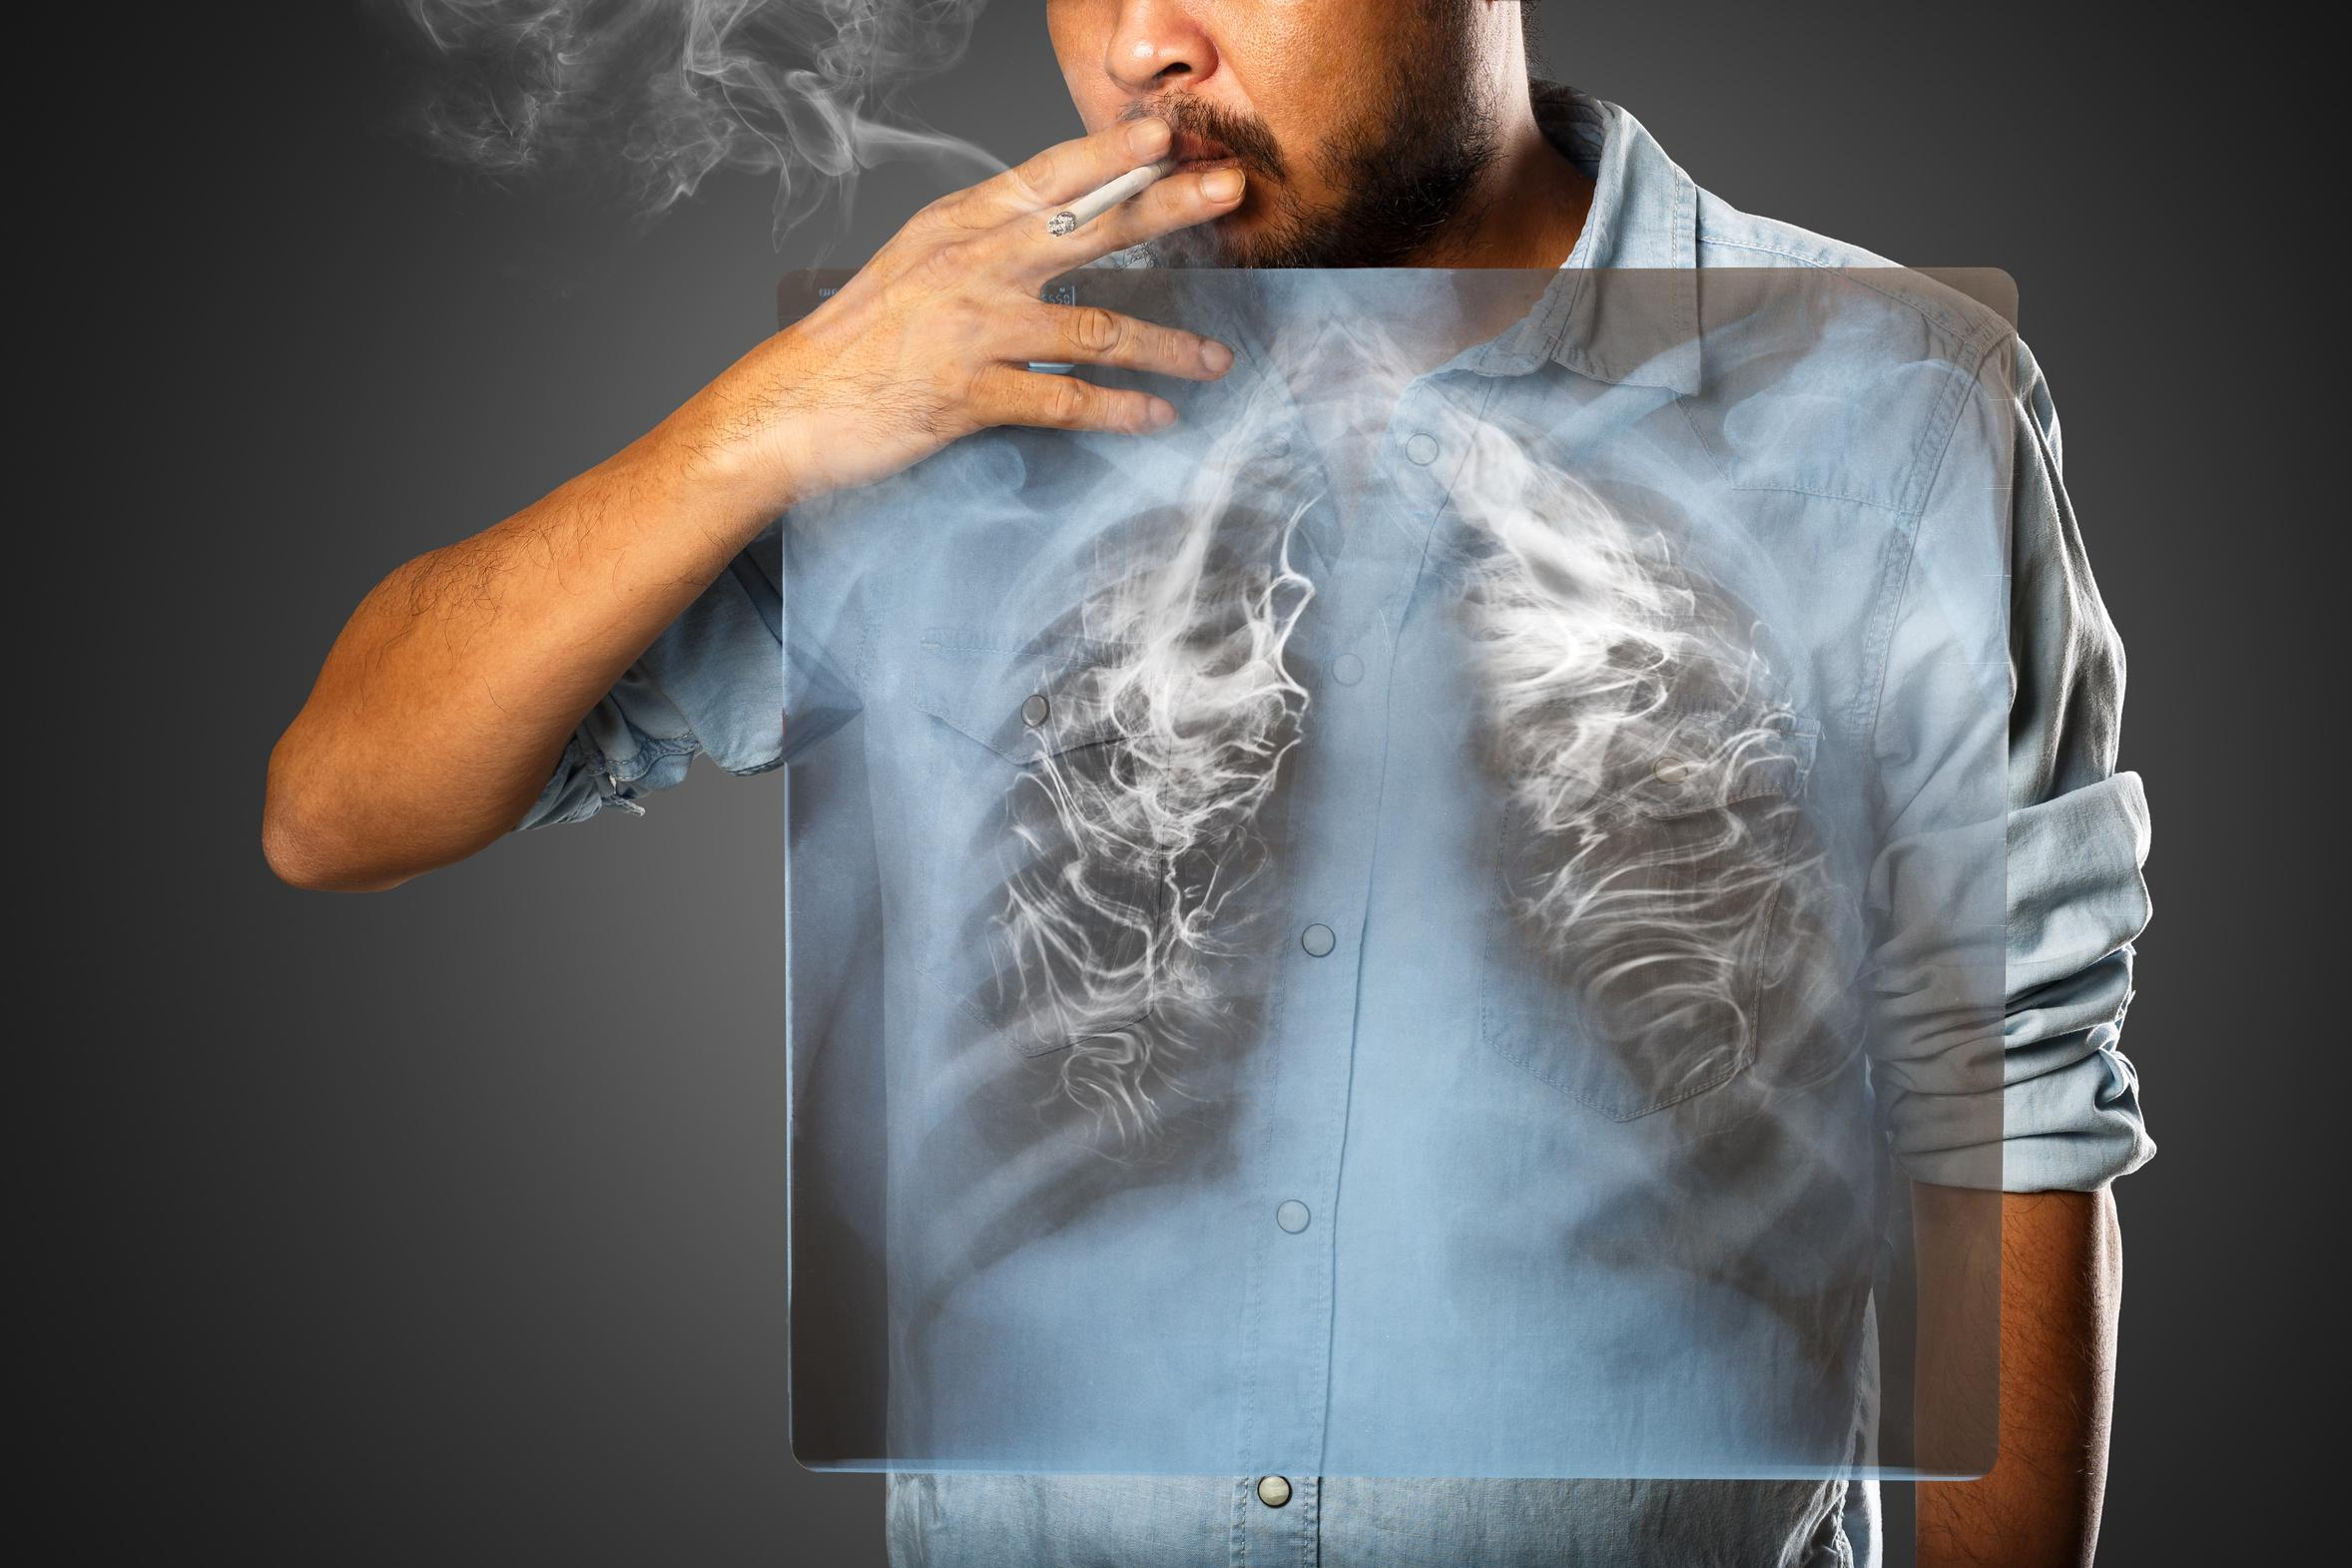 Легені, пошкоджені курінням, можуть повністю загоюватися: дослідження